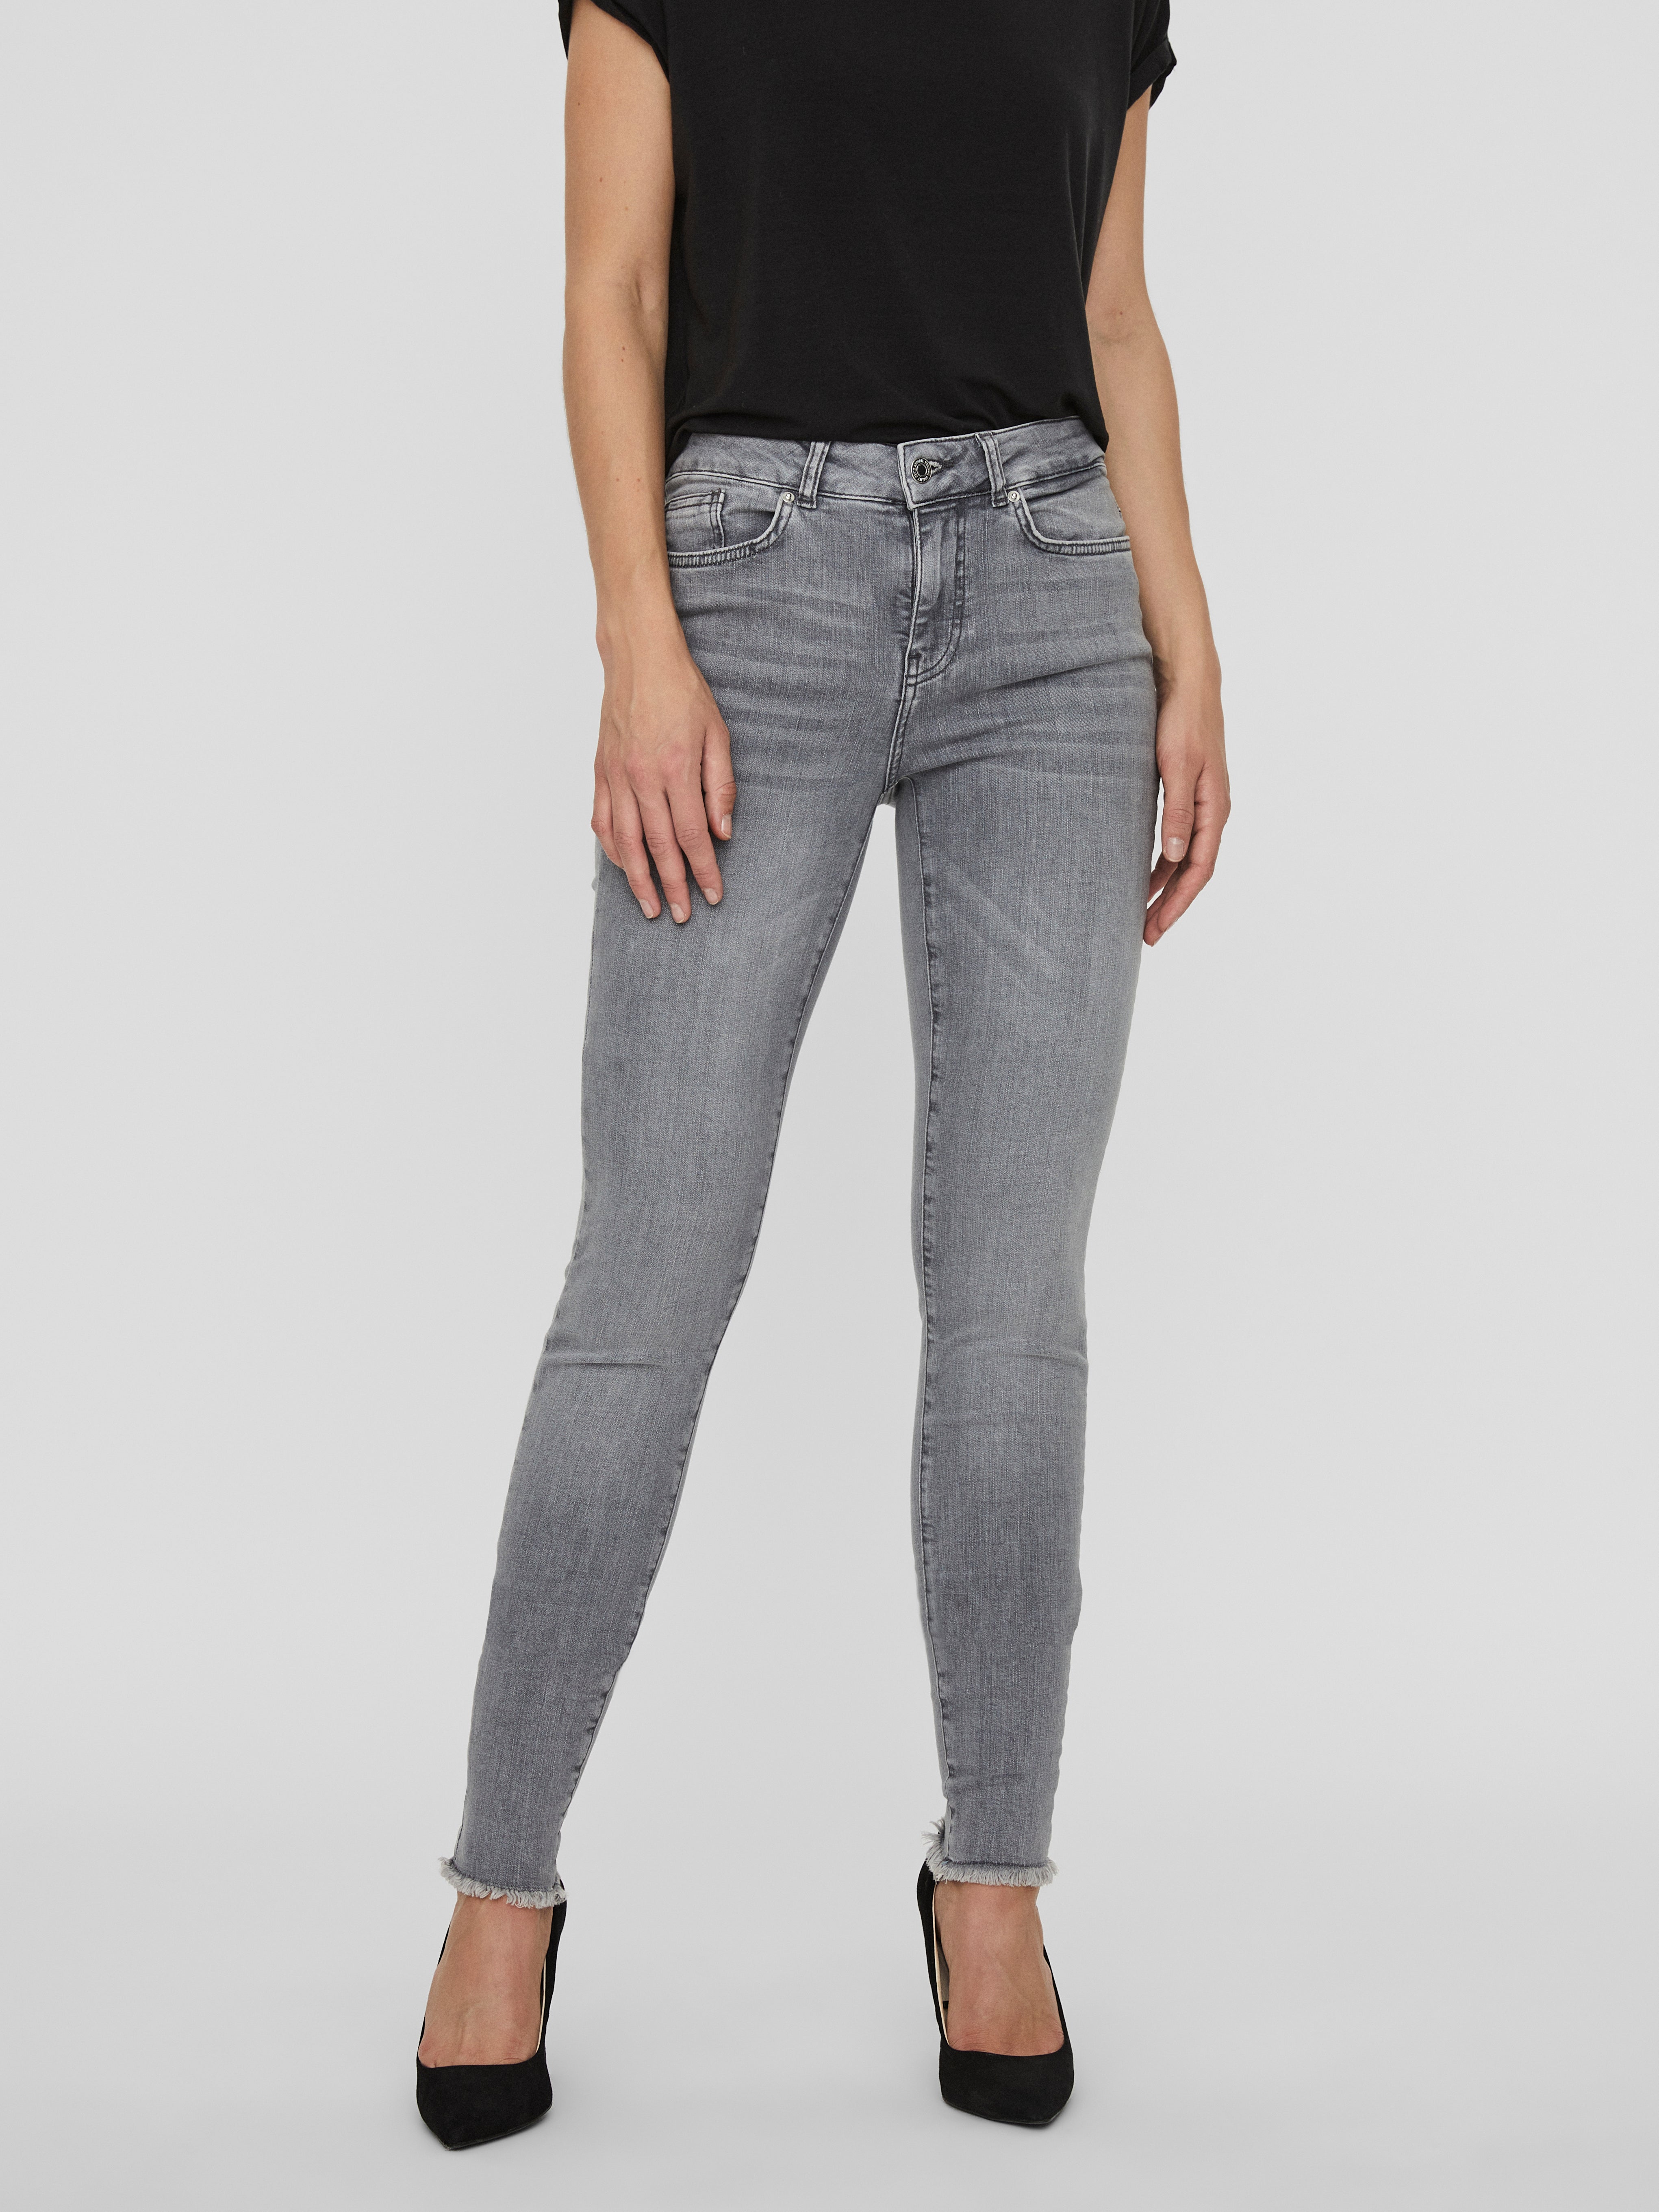 Vero Moda Broek Pantalon Femme Vmoctaviaat in het Grijs Dames Kleding voor voor Jeans voor Bootcut jeans 